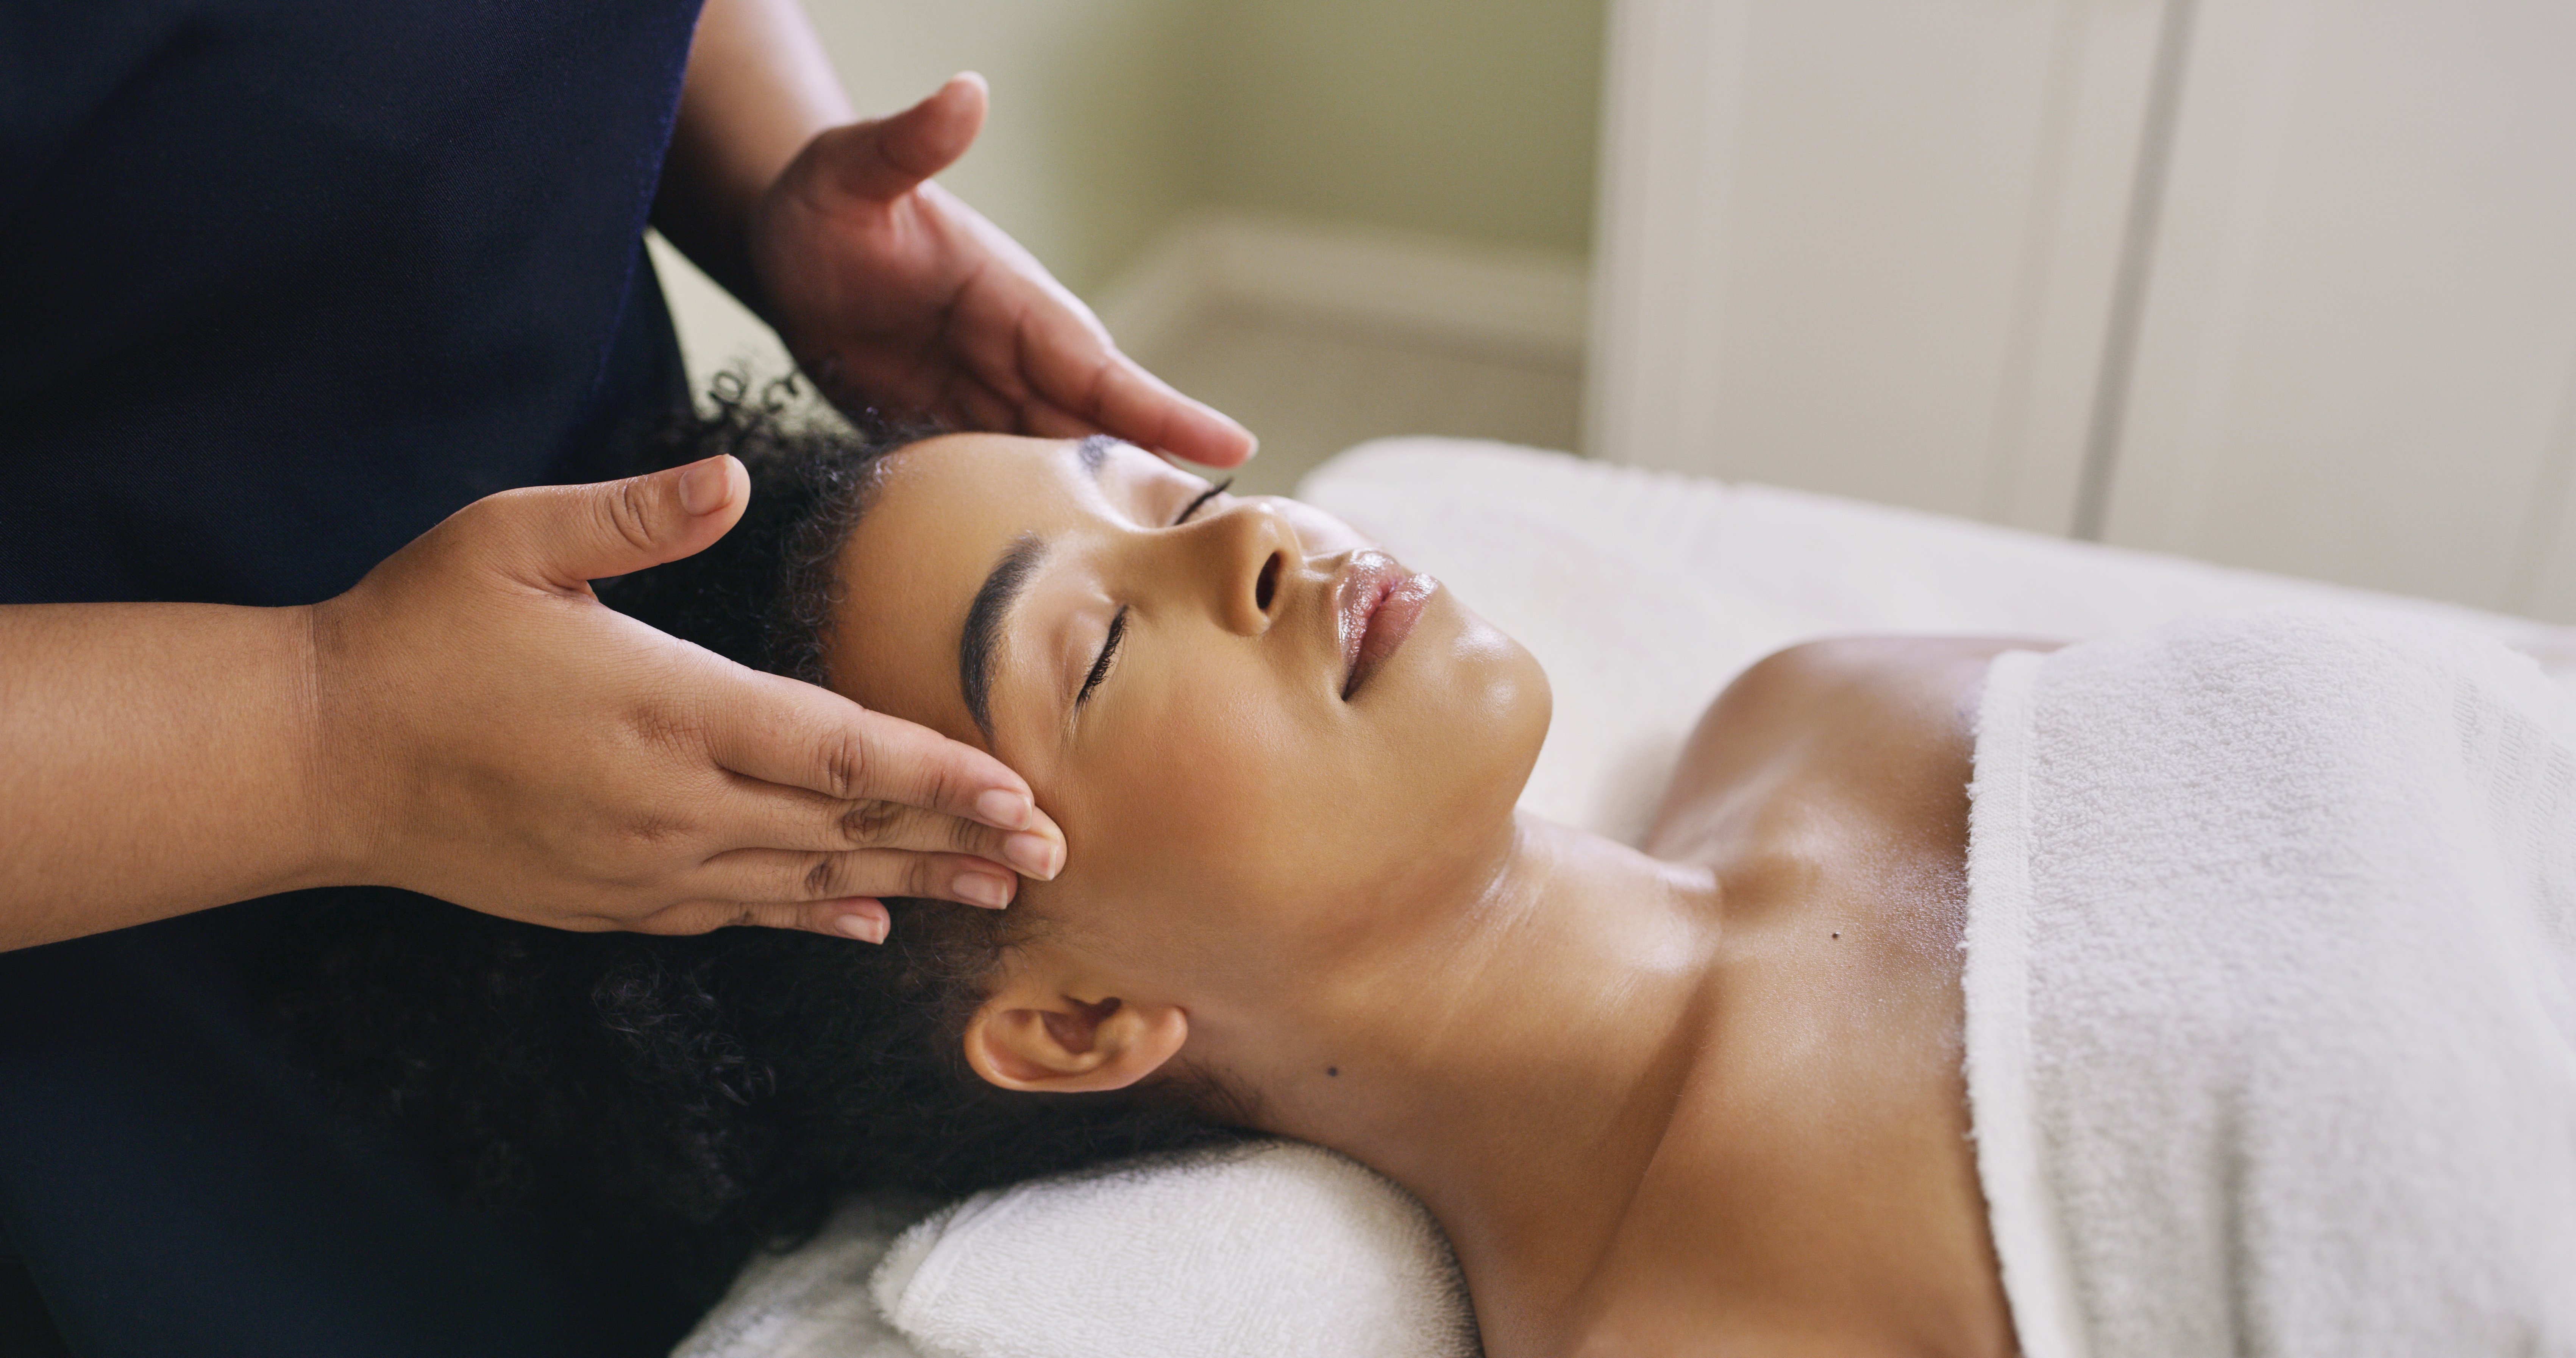 Much Tip a Massage Therapist - NerdWallet